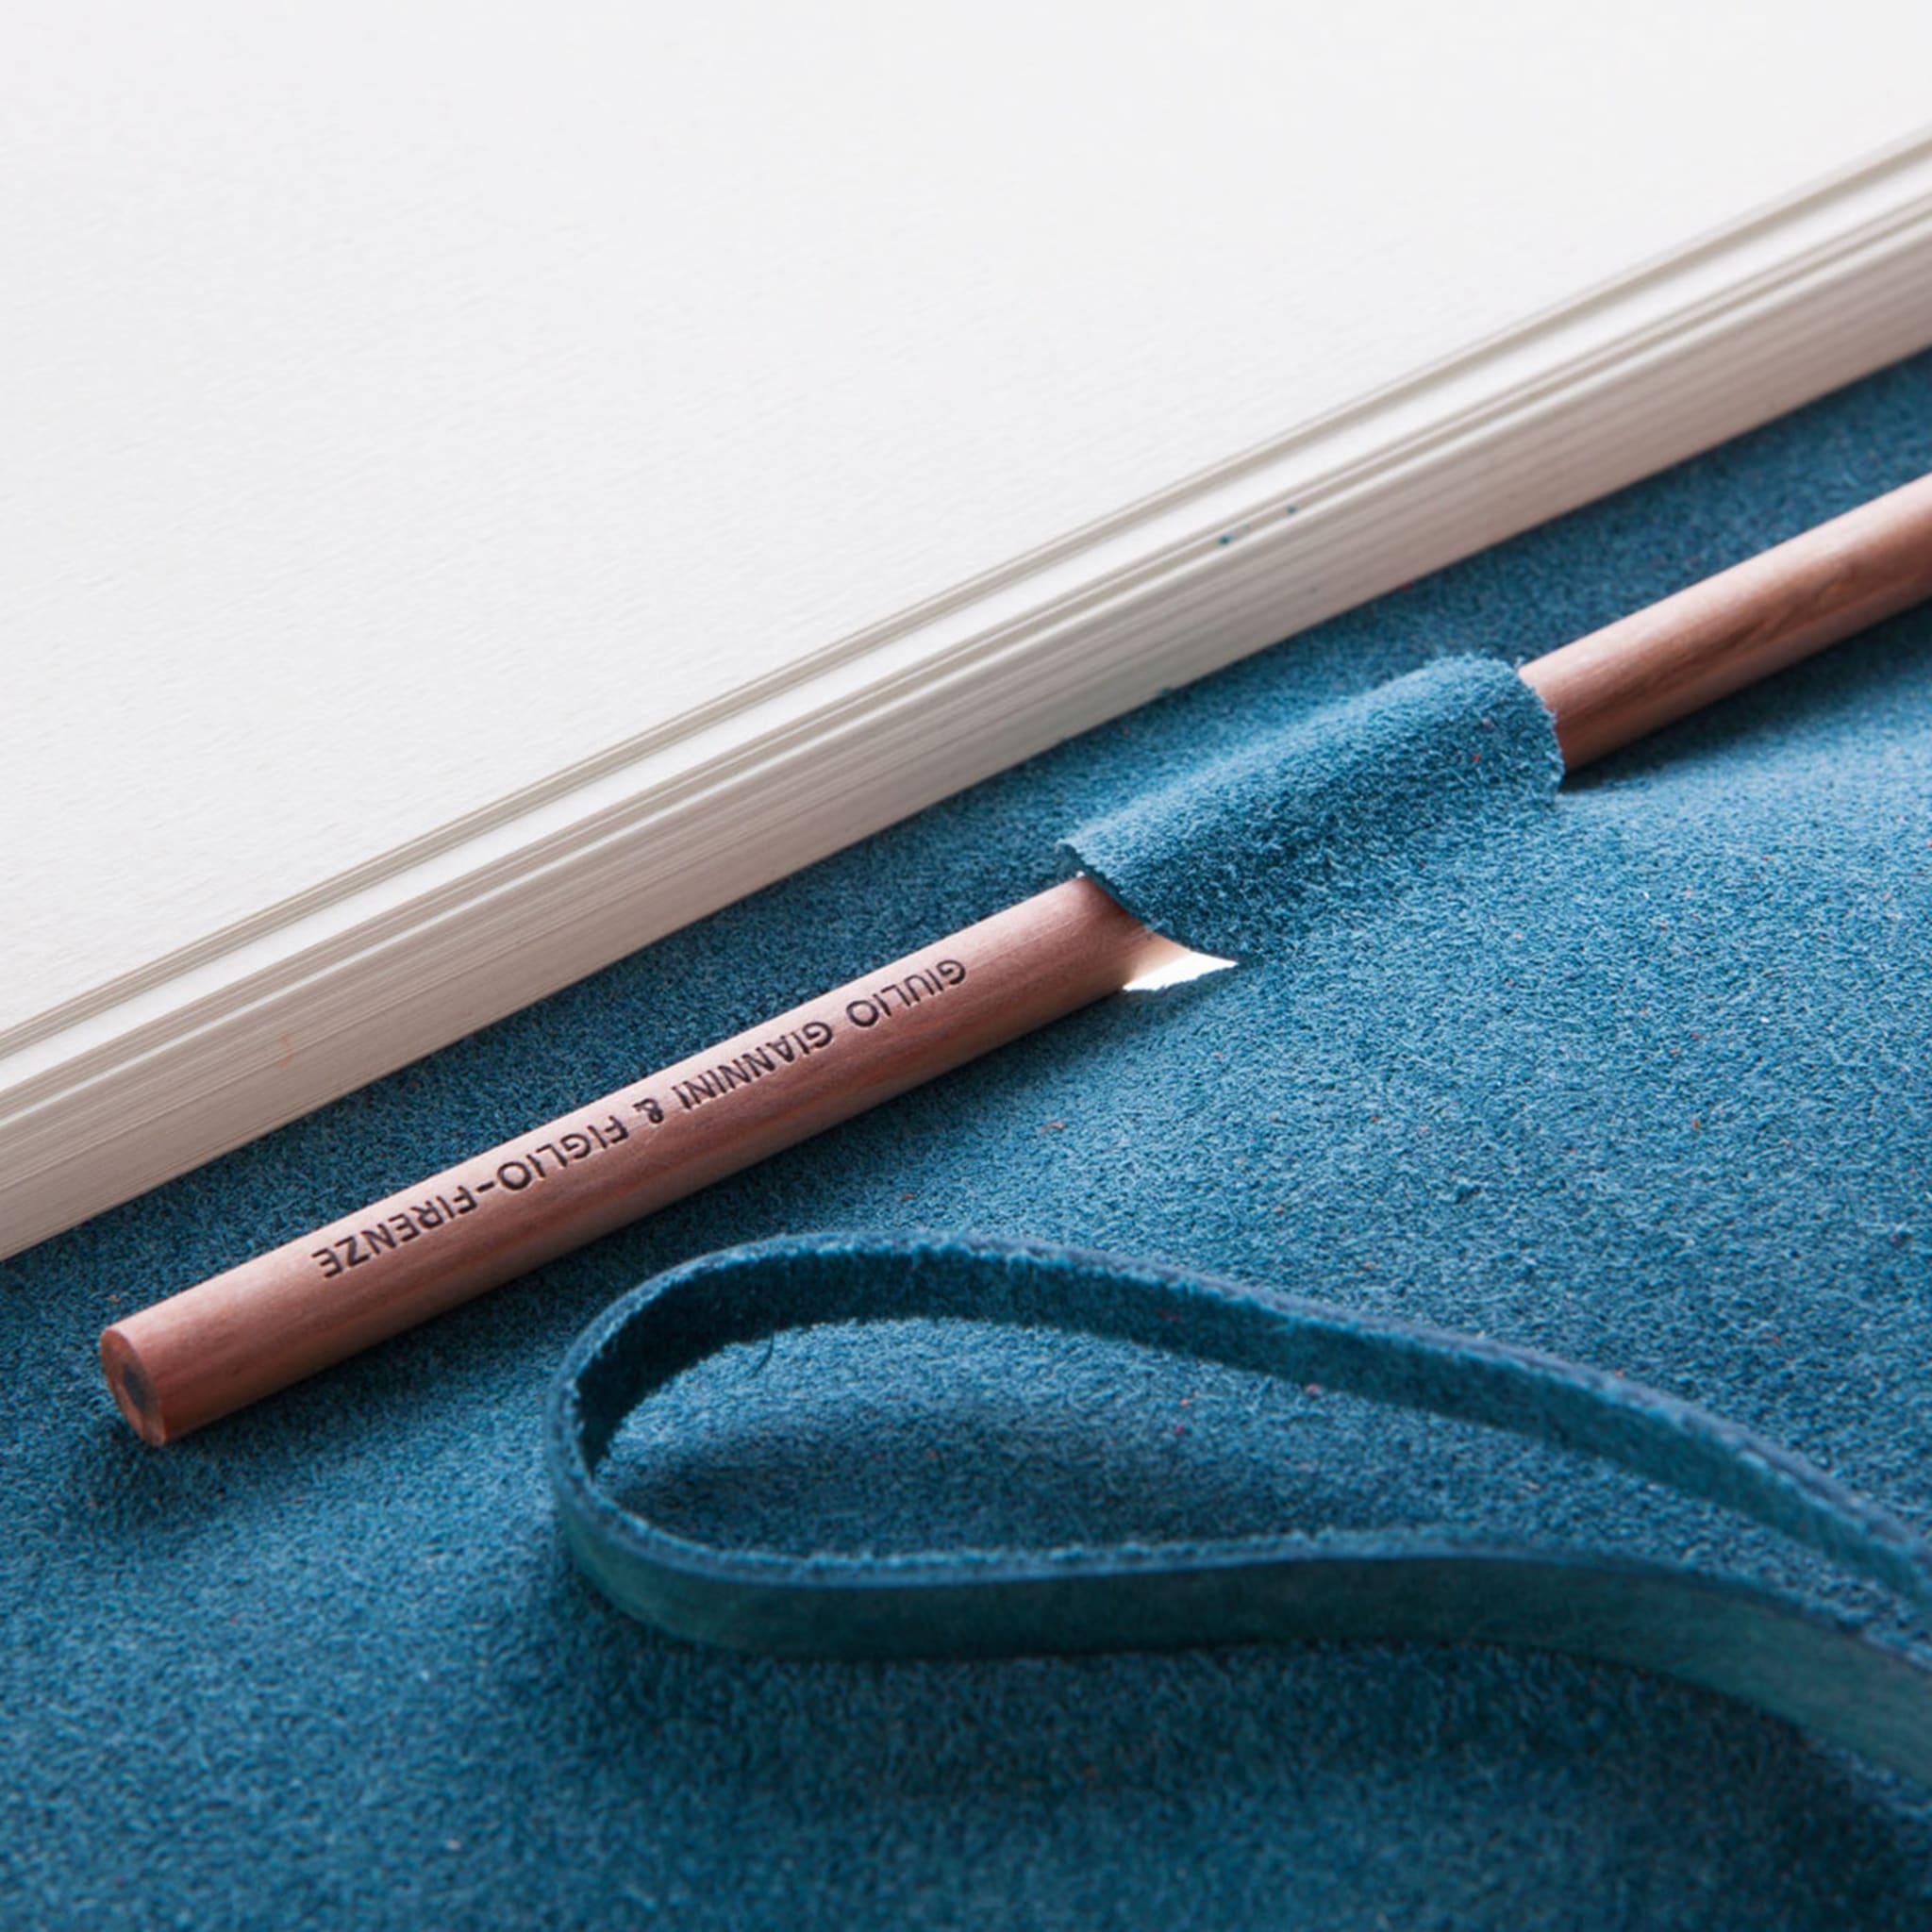 Dieses elegante Notizbuch wurde vom Florentiner Buchbinderatelier Giannini in einem eleganten Blauton gebunden. Der Einband wird mit der alten Technik der pflanzlichen Gerbung hergestellt, und das schlichte elfenbeinfarbene Pergamentpapier im